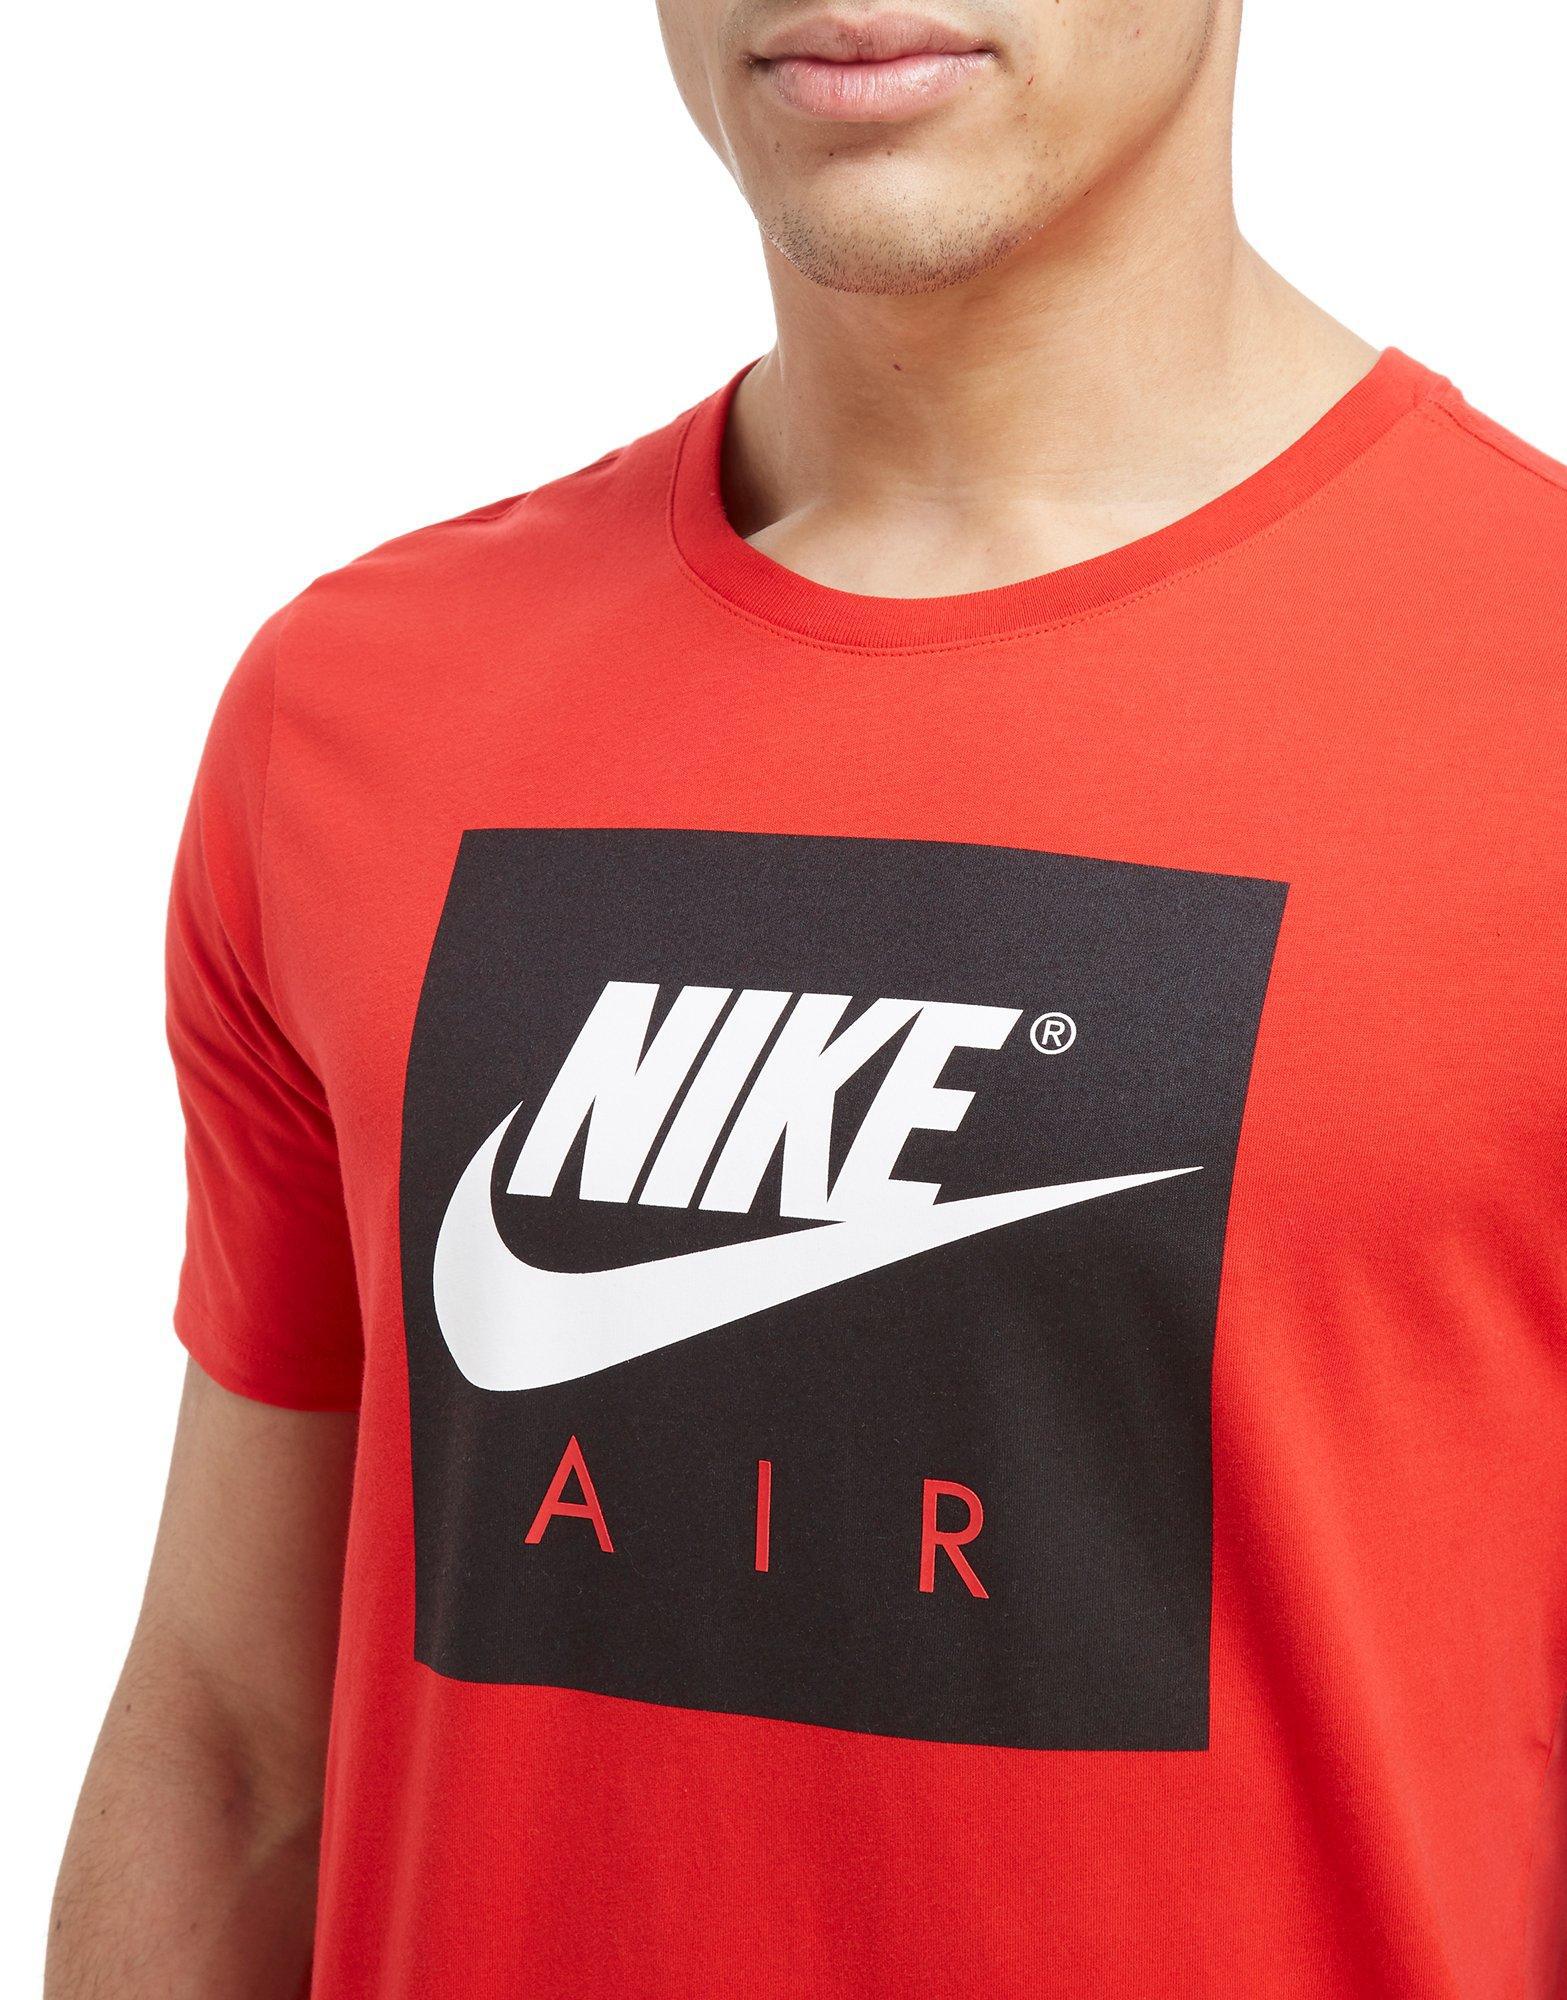 nike air shirt red hot 863a0 60c92